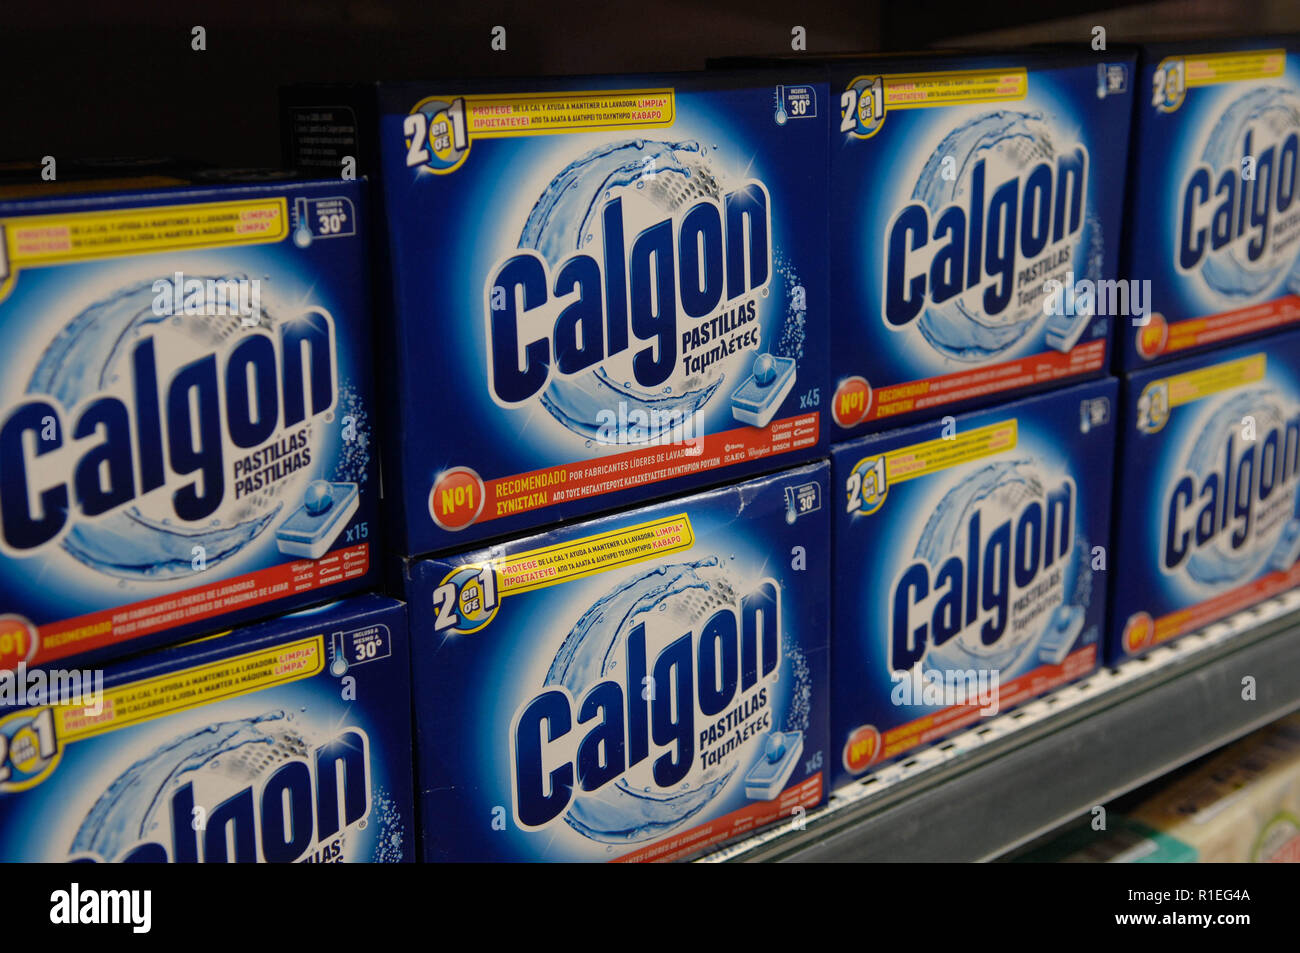 Calgon,detergente,Servicio de lavandería,lavadora Fotografía de stock -  Alamy